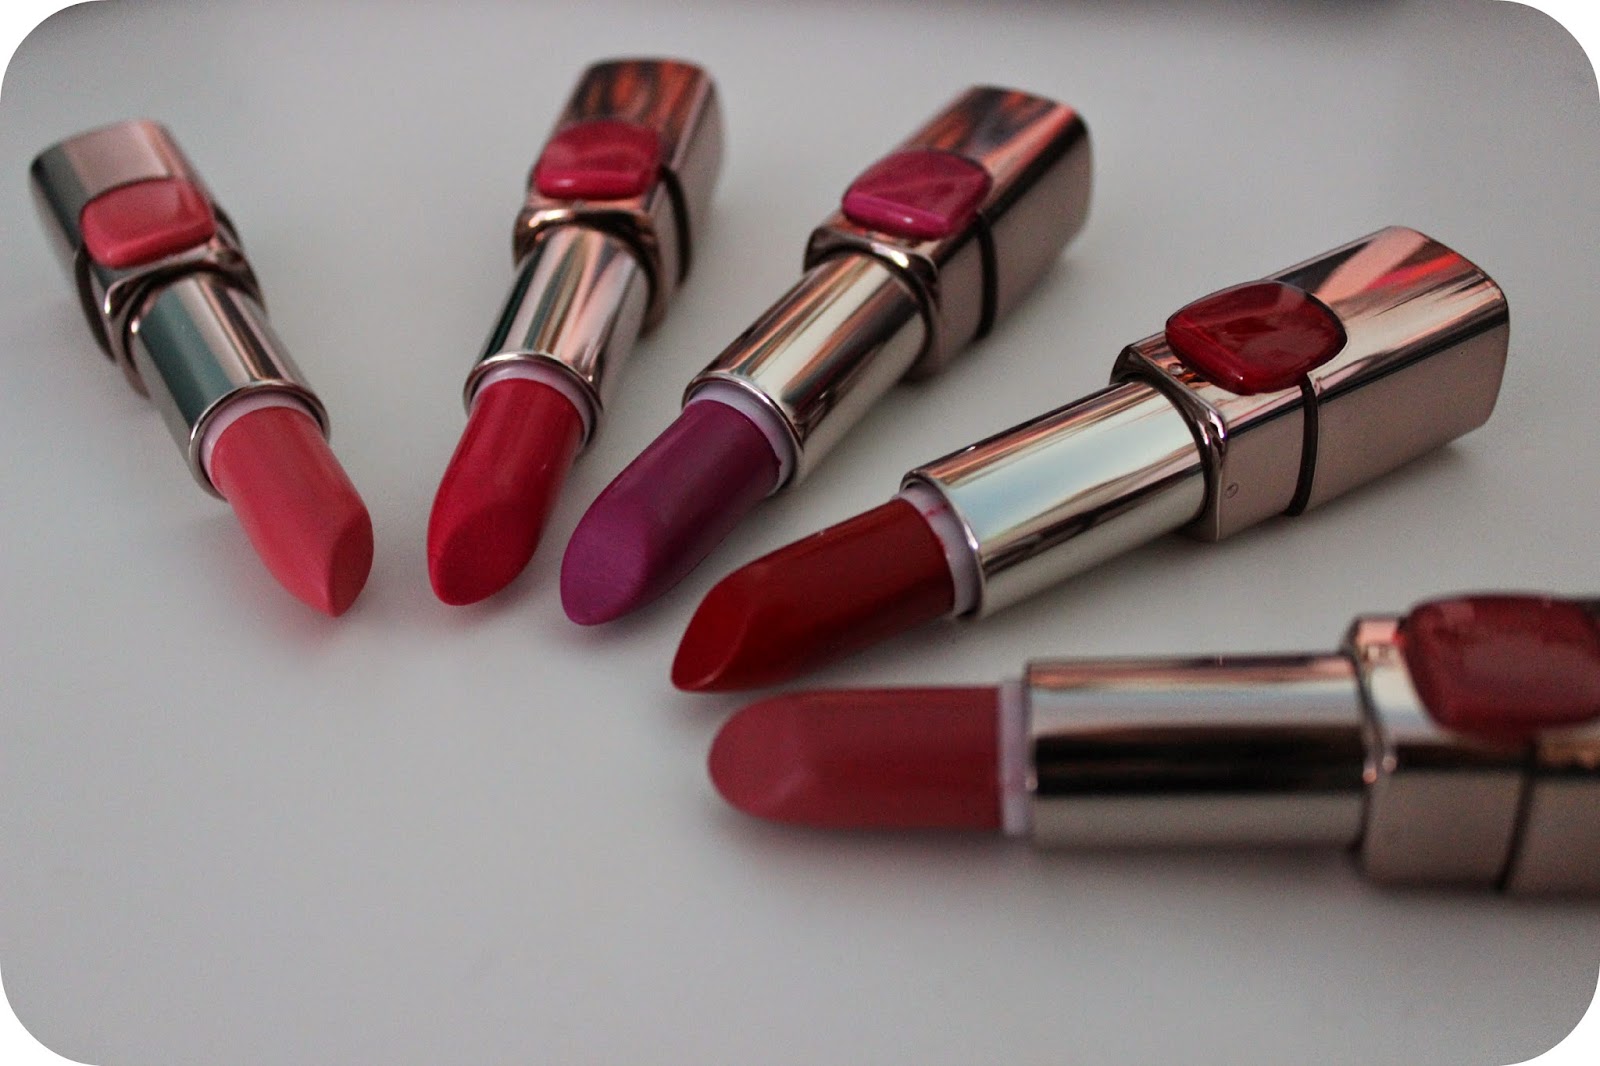 L'Óreal Colour Riche Moisture Matte Lipsticks | Review | Haus of Makeup